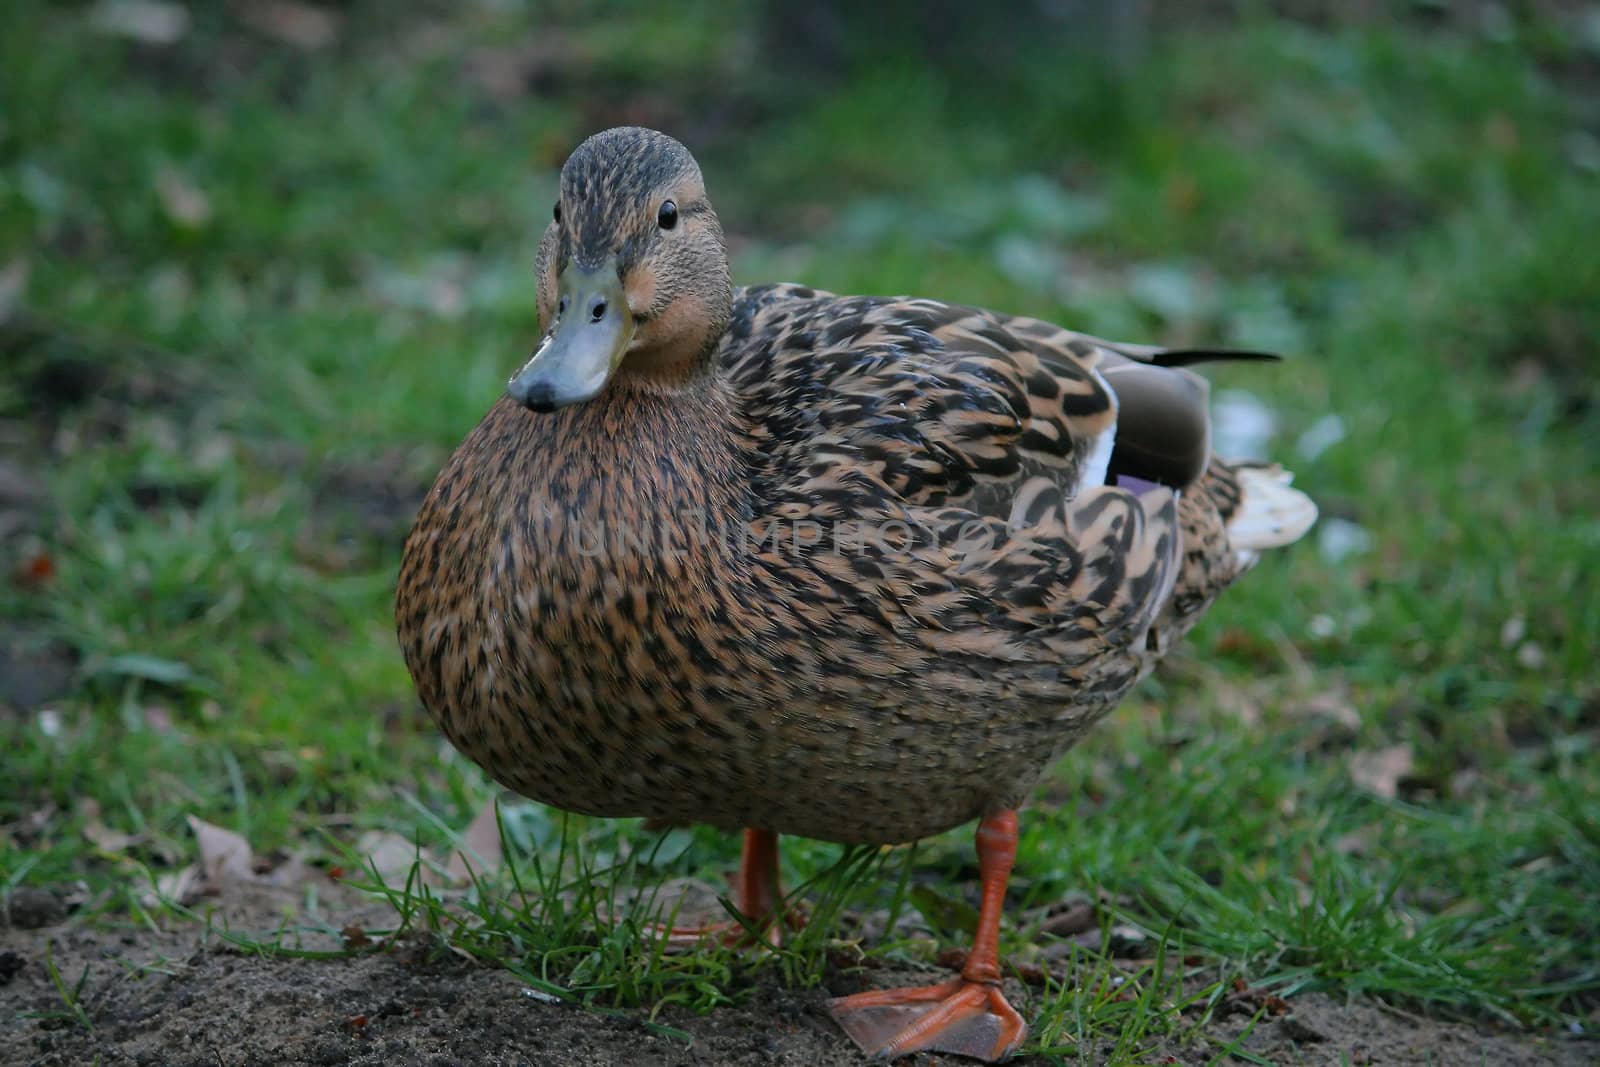 duck on the grass, nature, bird, animal